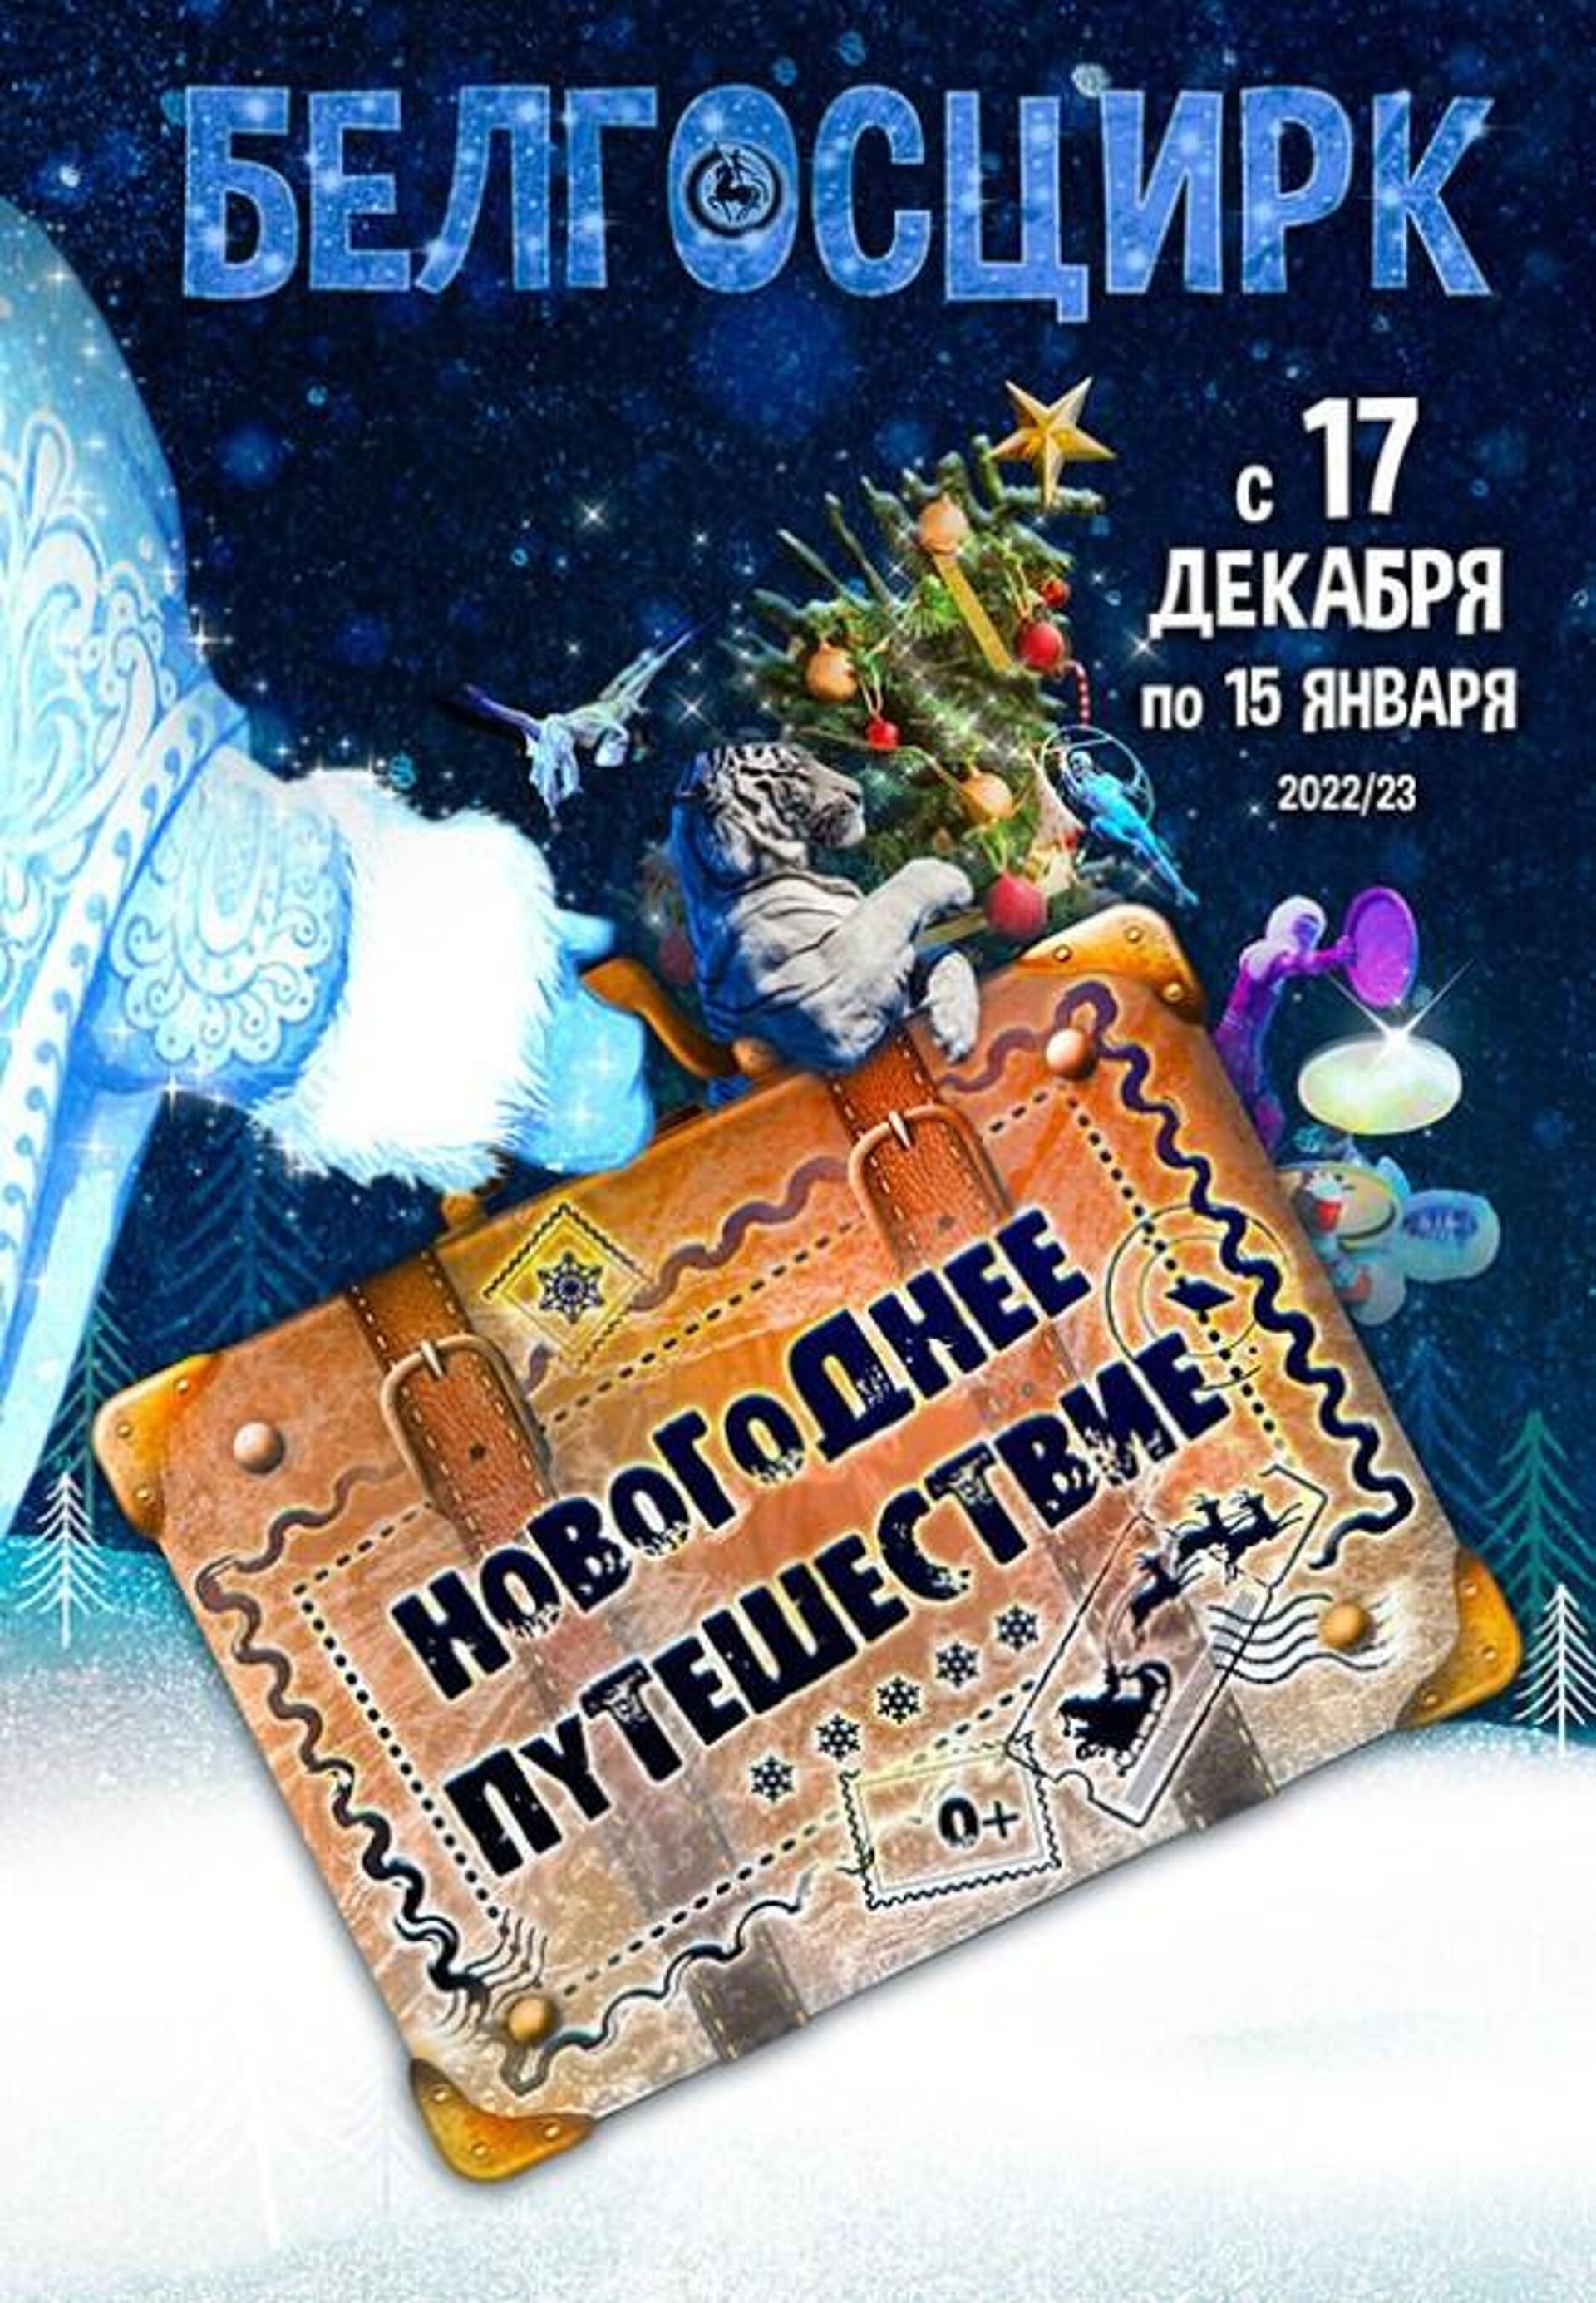 В канун новогодних праздников Белгосцирк приглашает в незабываемое Новогоднее путешествие - Sputnik Беларусь, 1920, 23.12.2022